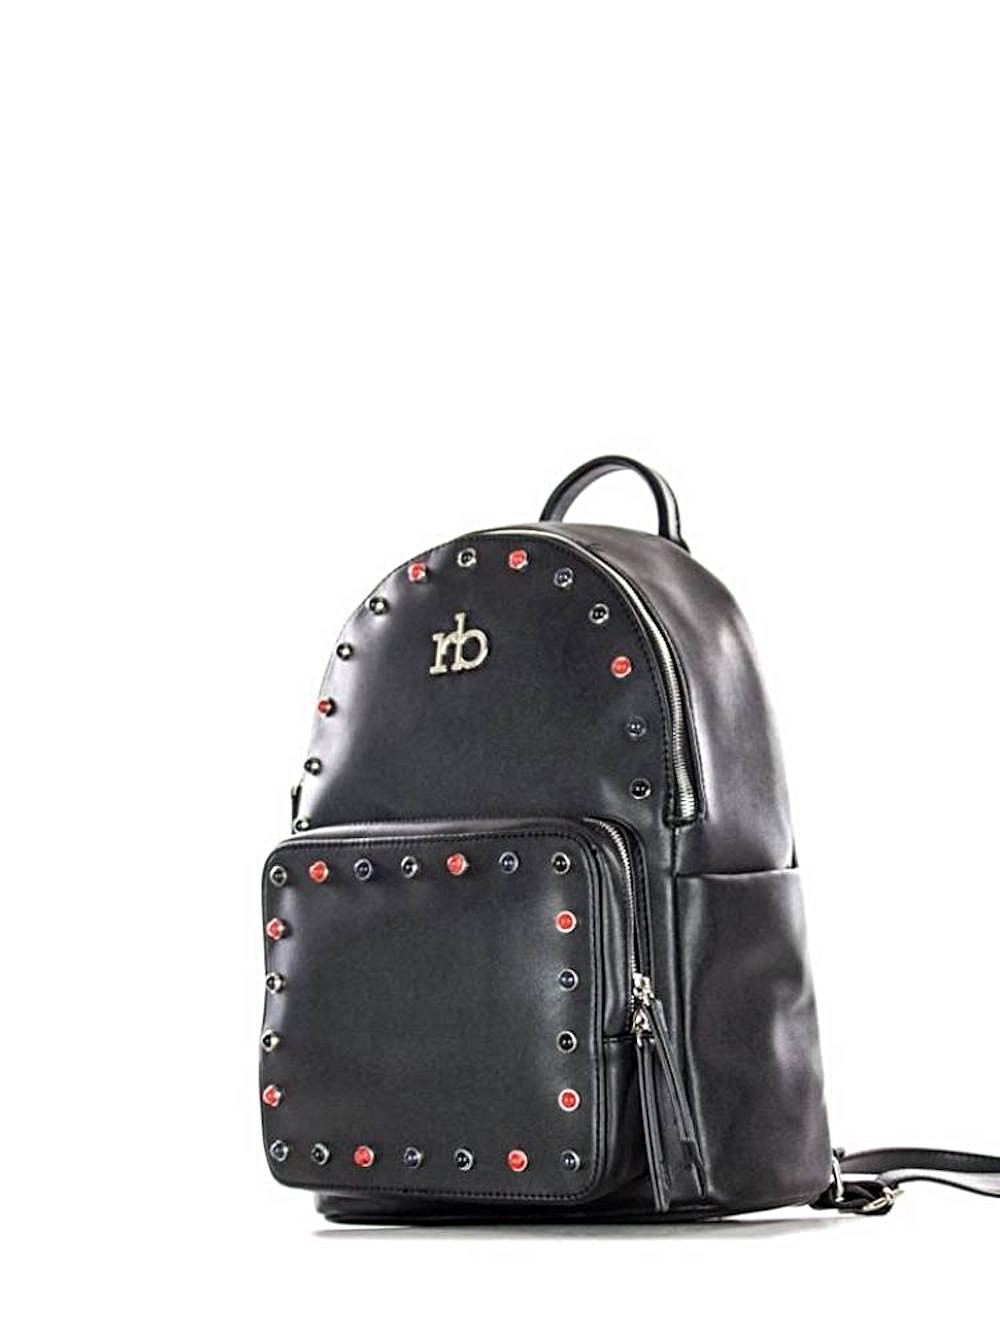 Roccobarocco Studded Backpack ASH | Bags Rucksacks | ROCCOBAROCCO | Fashion2B